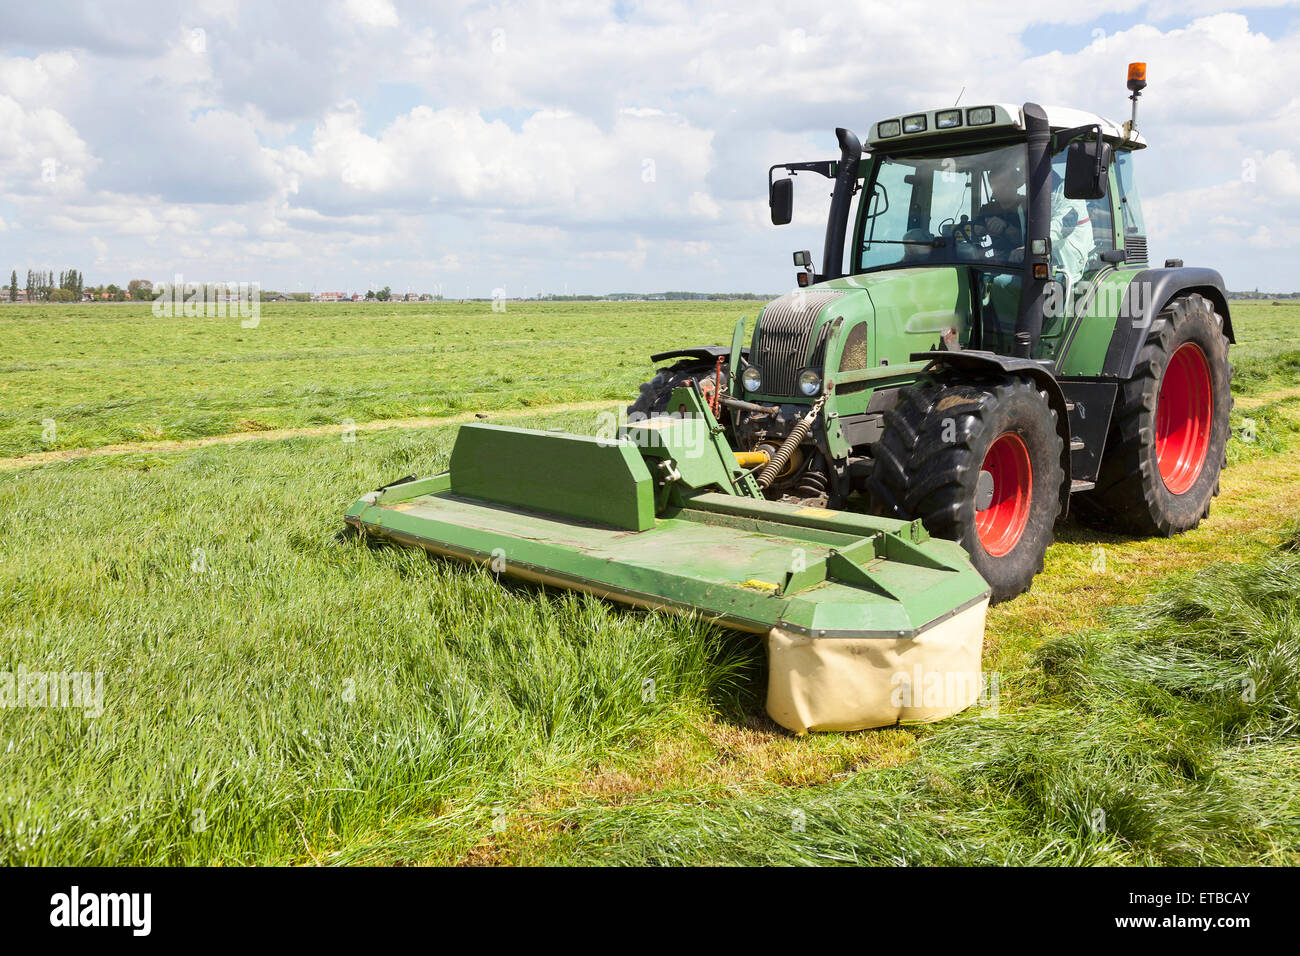 Traktor und Mähwerk auf grüner Wiese in den Niederlanden an sonnigen Tag  Stockfotografie - Alamy